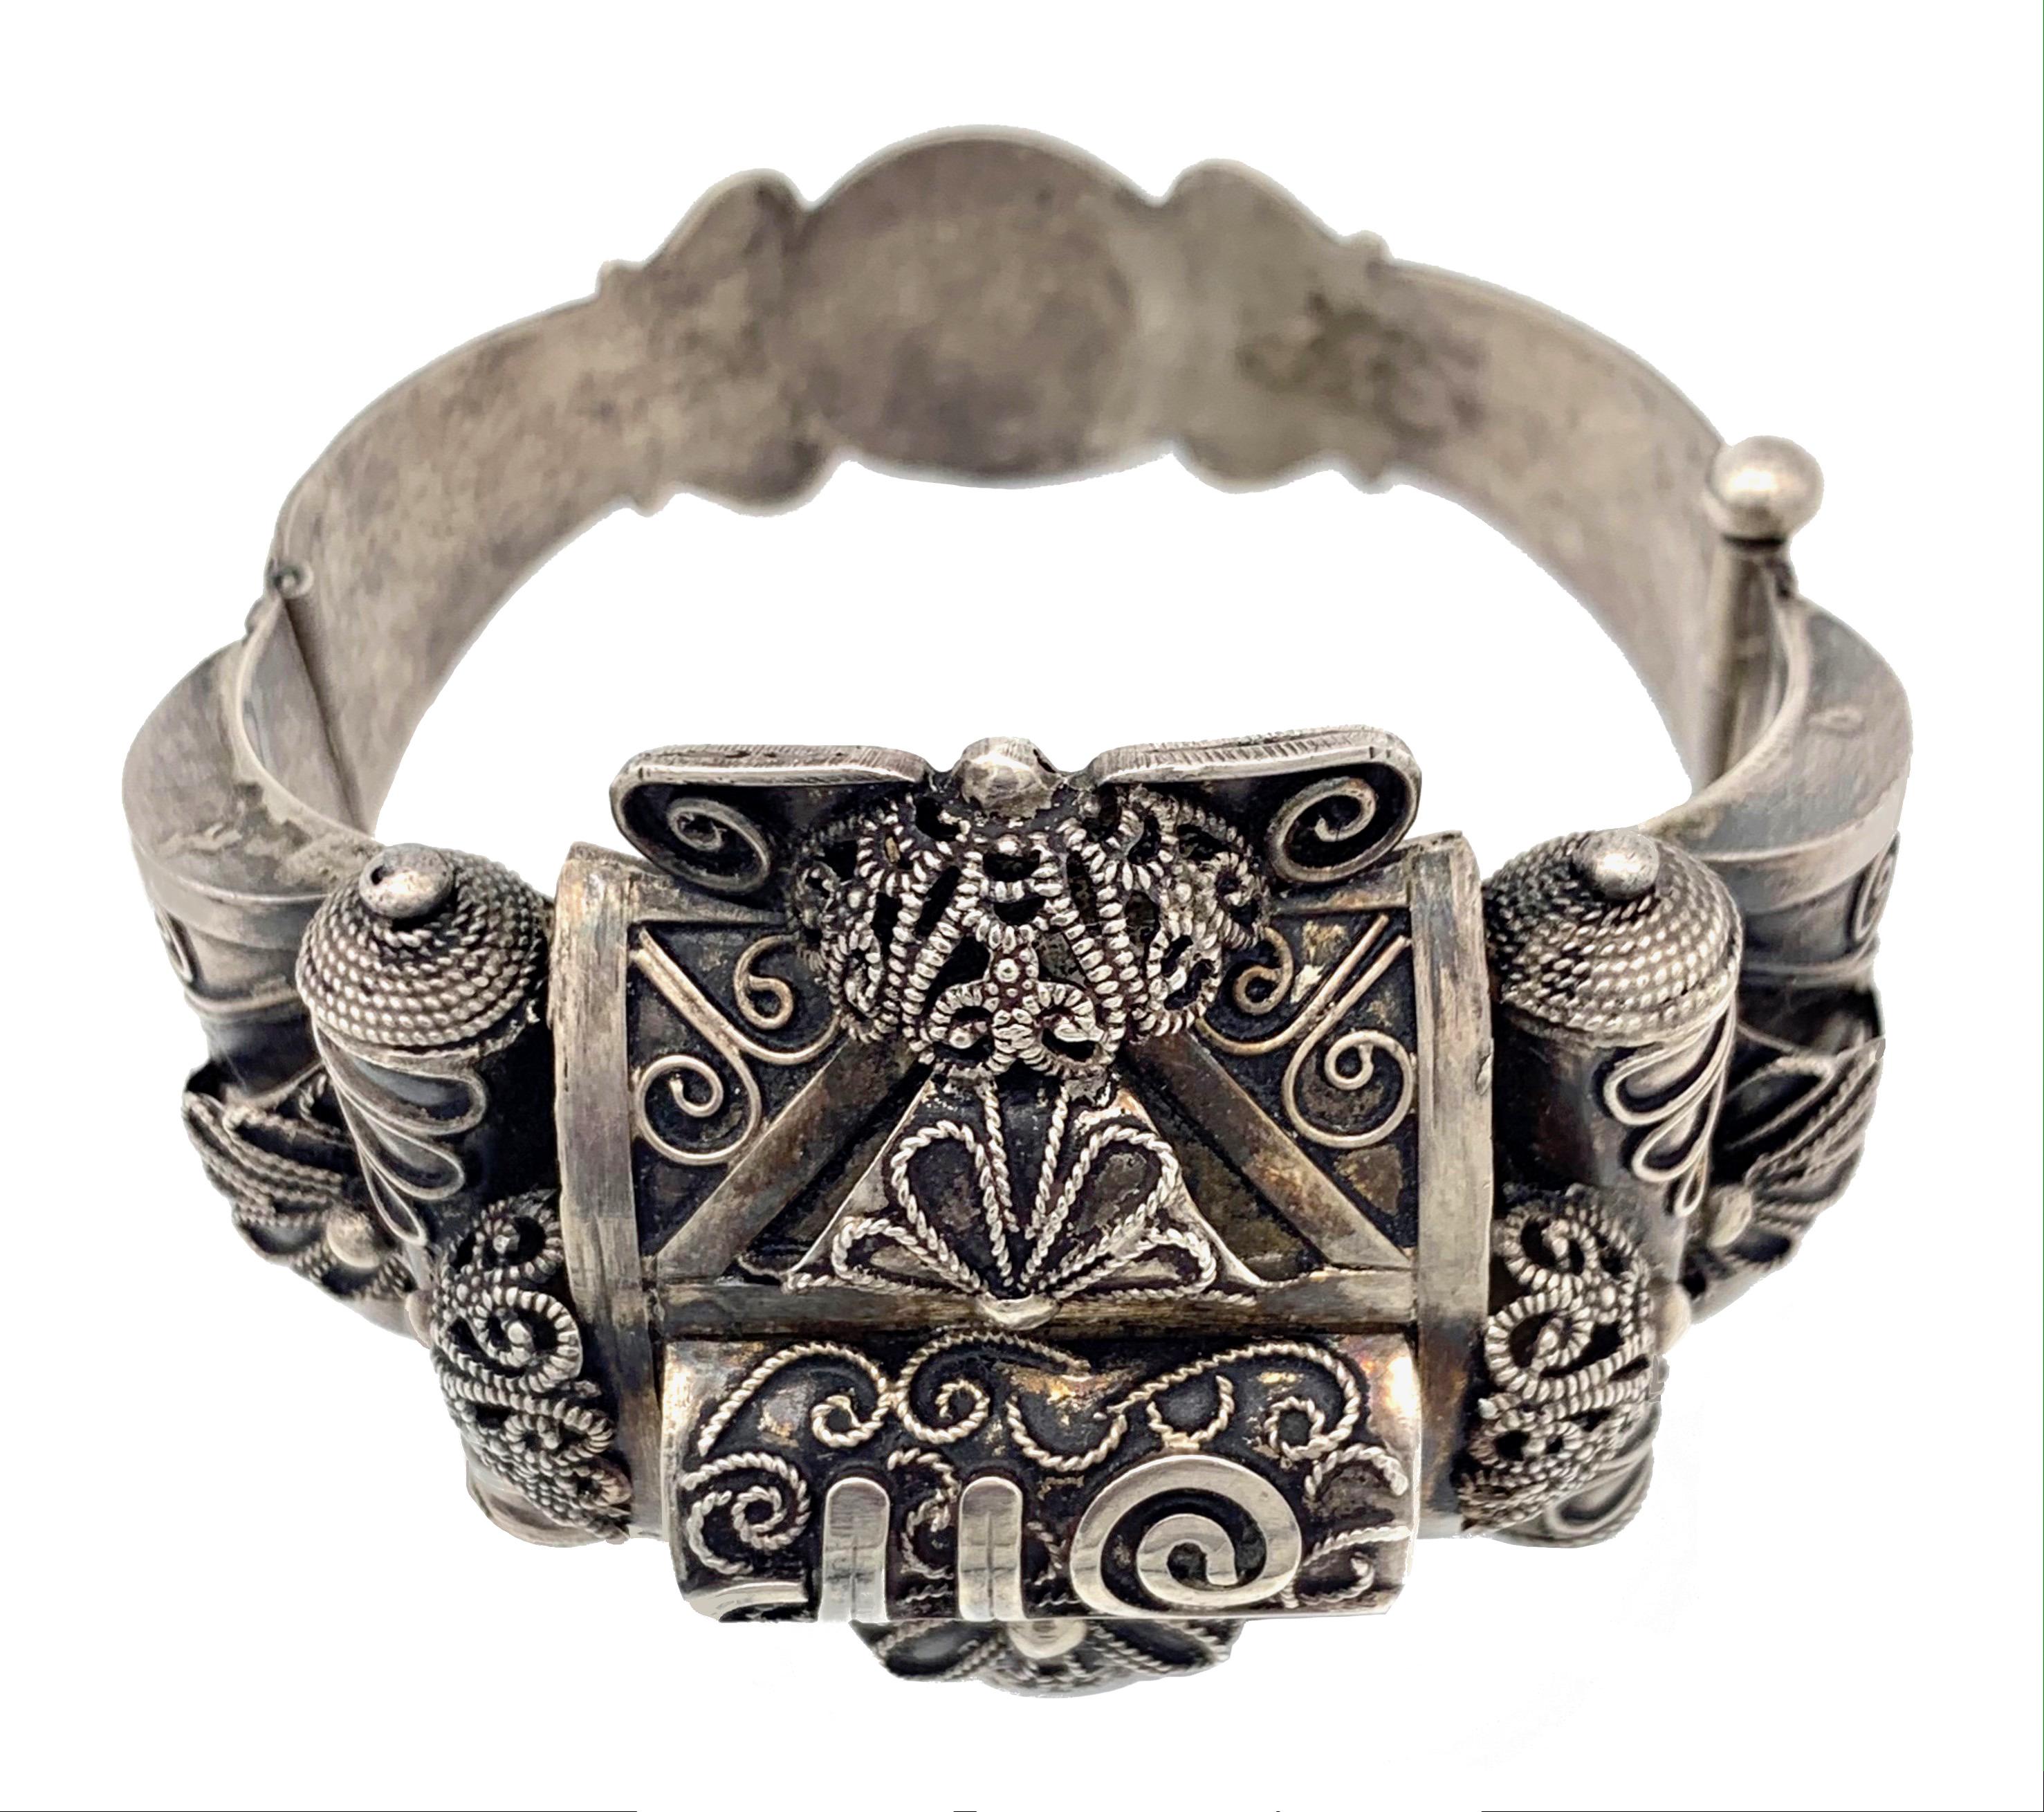 Cet important bracelet en argent a été fabriqué à la main en Afrique du Nord au début du 20e siècle.
Le bracelet est décoré de fils d'argent tordus appliqués. 